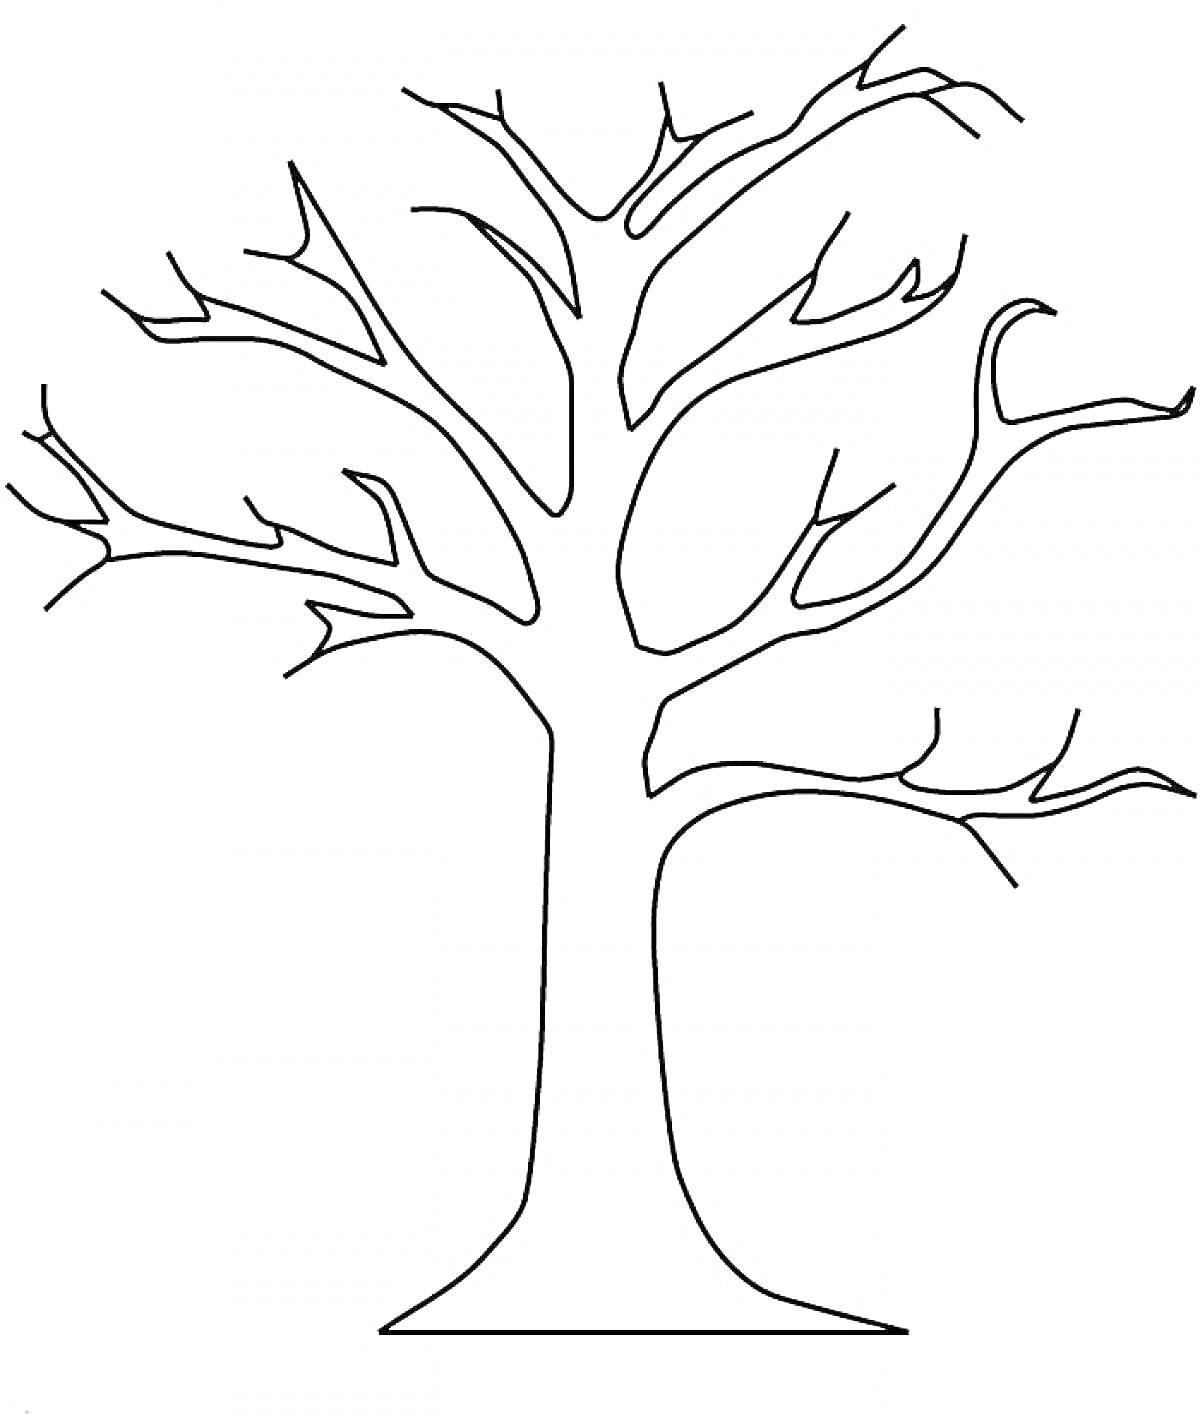  Дерево без листьев, контурное изображение